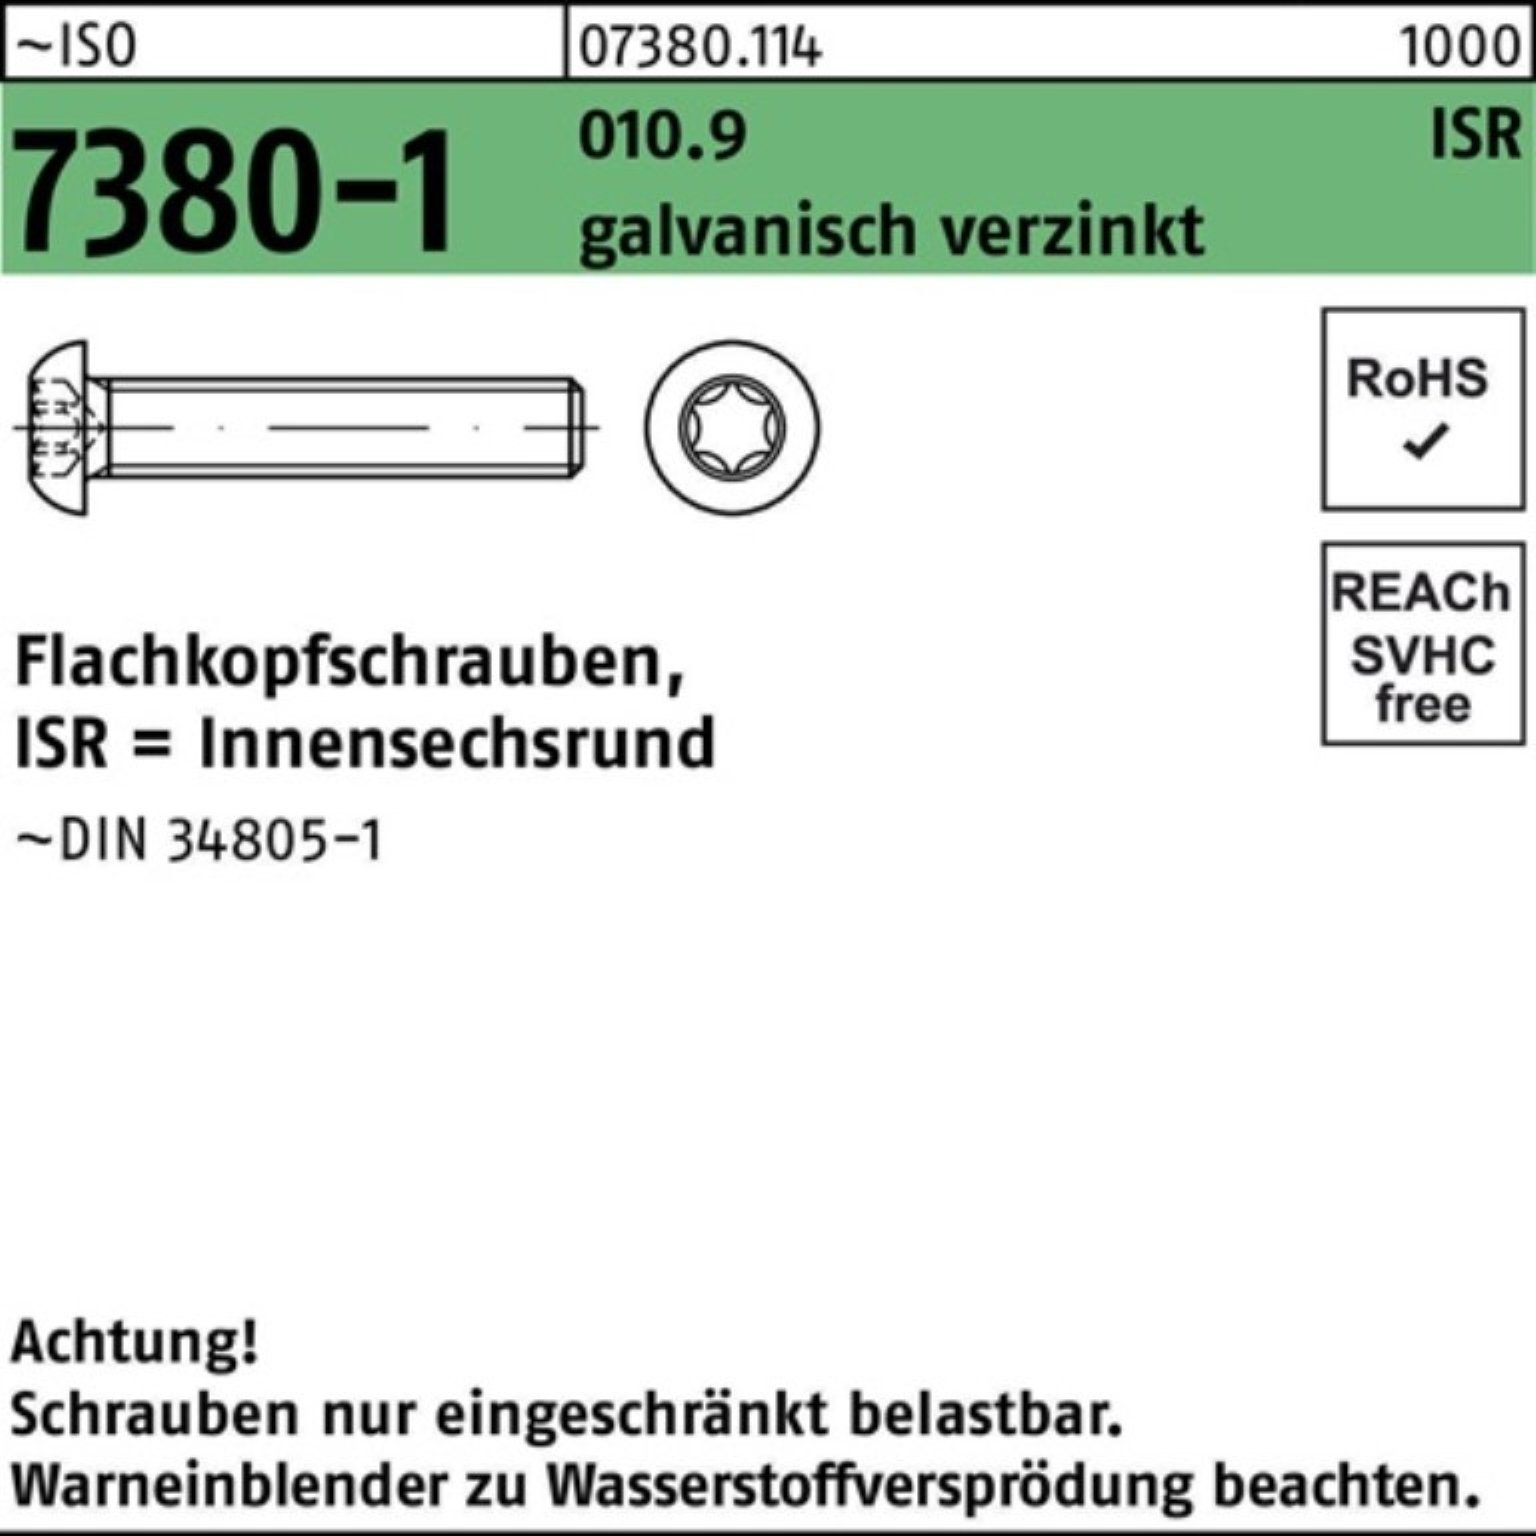 Schraube 200er M8x20-T40 ISR galv.verz. Pack Reyher 7380-1 Flachkopfschraube ISO 010.9